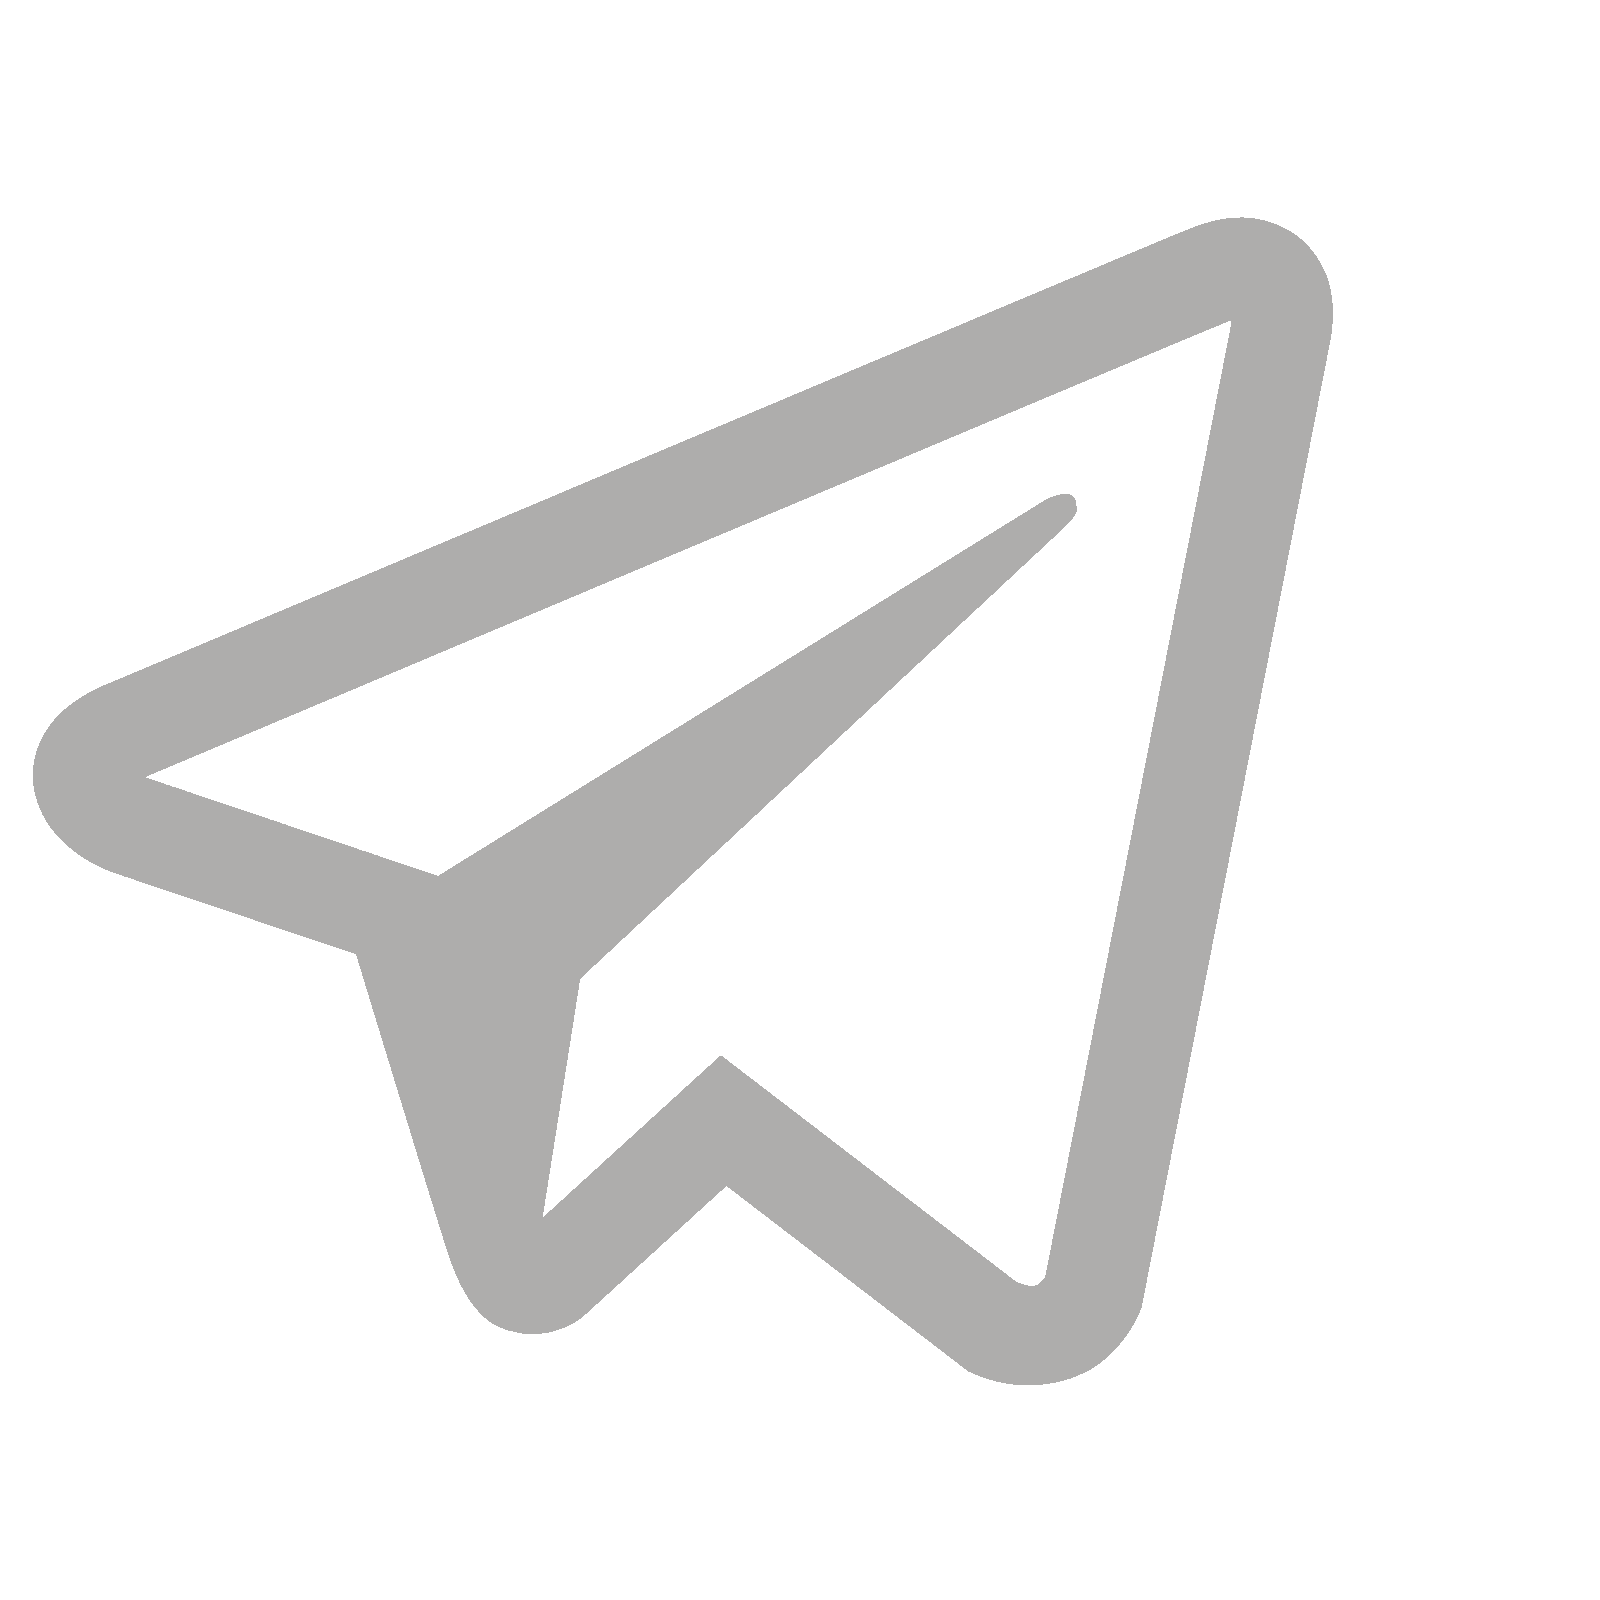 ثبت تبلیغات در کرج با تلگرام